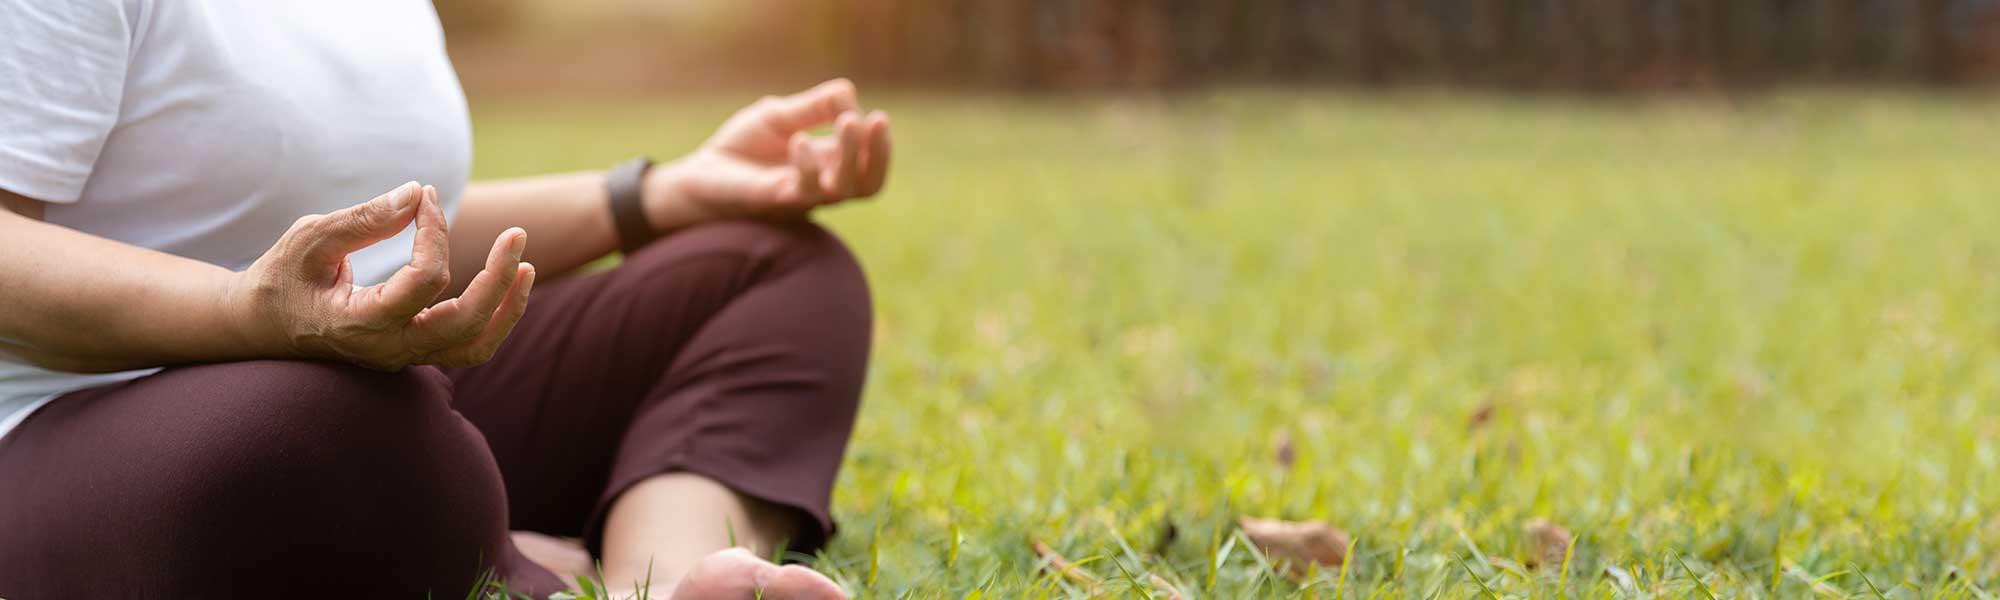 Méditation : une pratique “santé” pour les seniors et leurs aidants